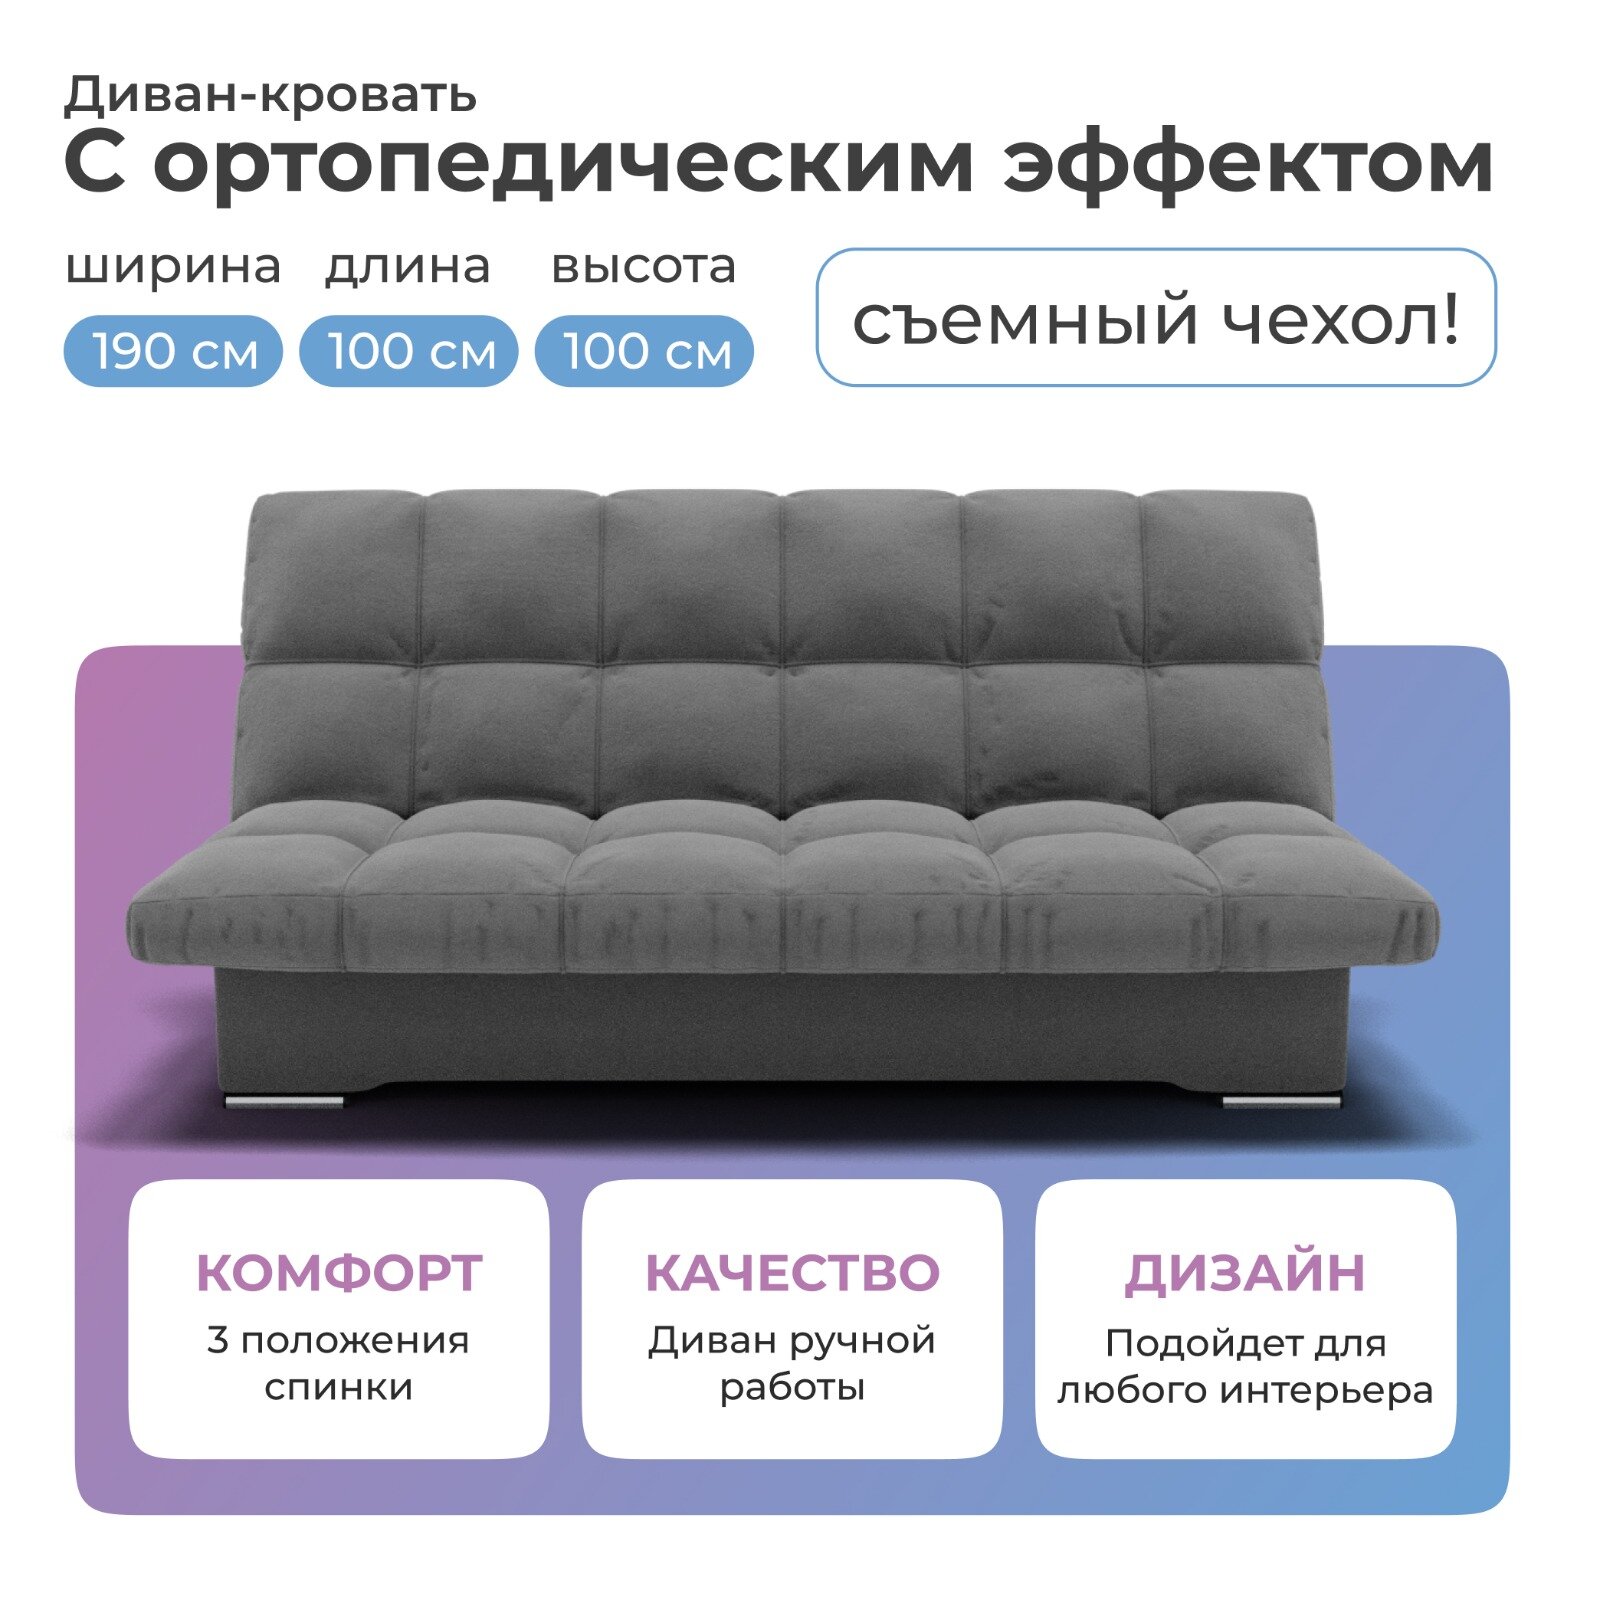 Диван-кровать Финка темно-серый цвета 190х100 см